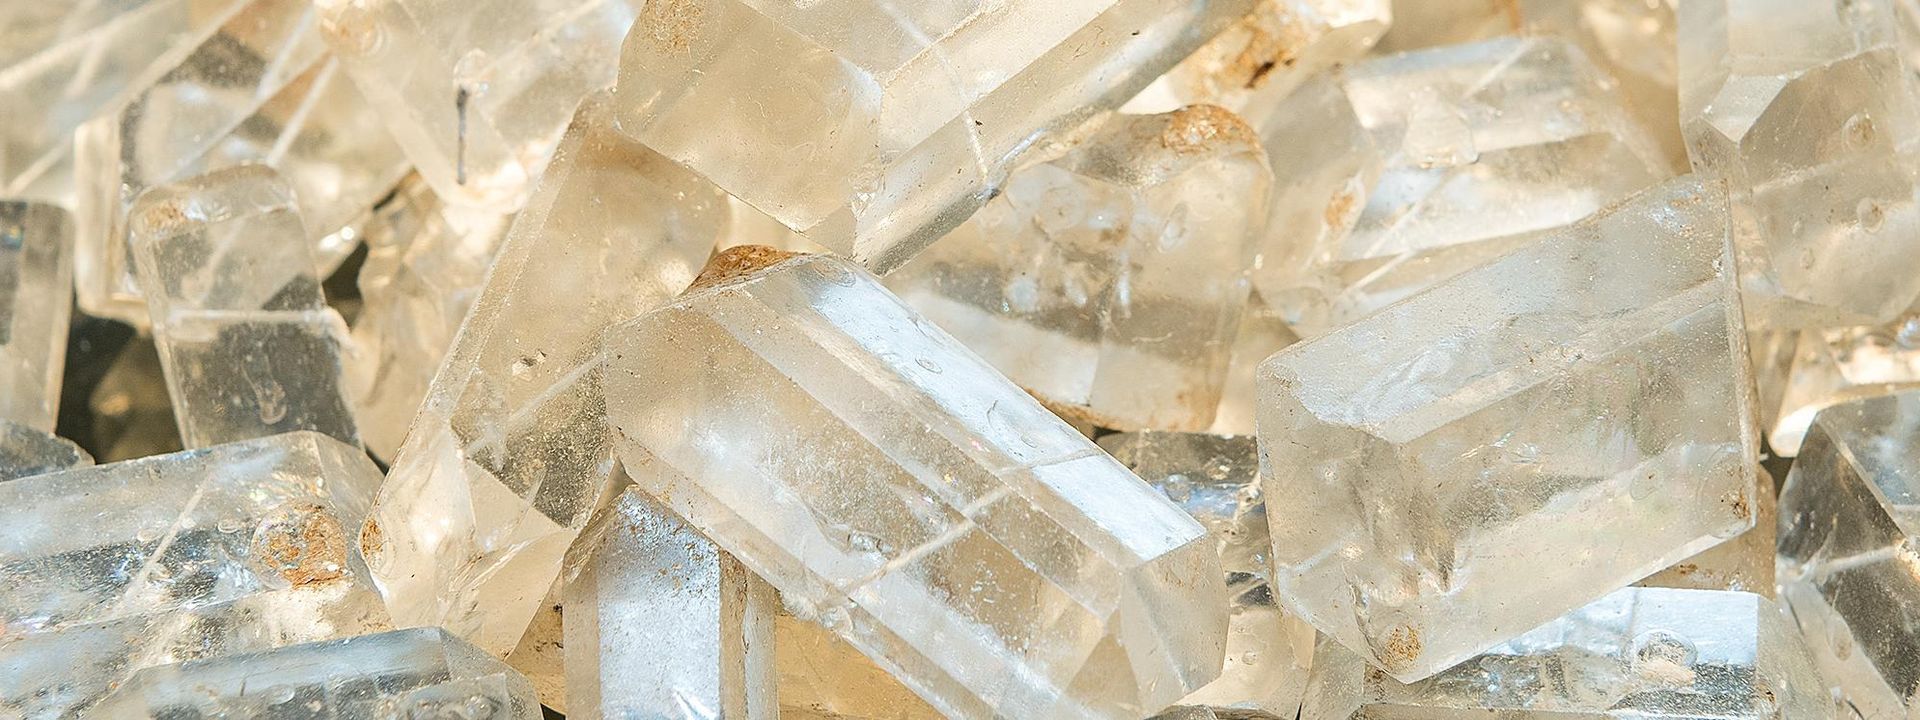 Detailansicht von großen, weiß-milchigen Zuckerkristallen.